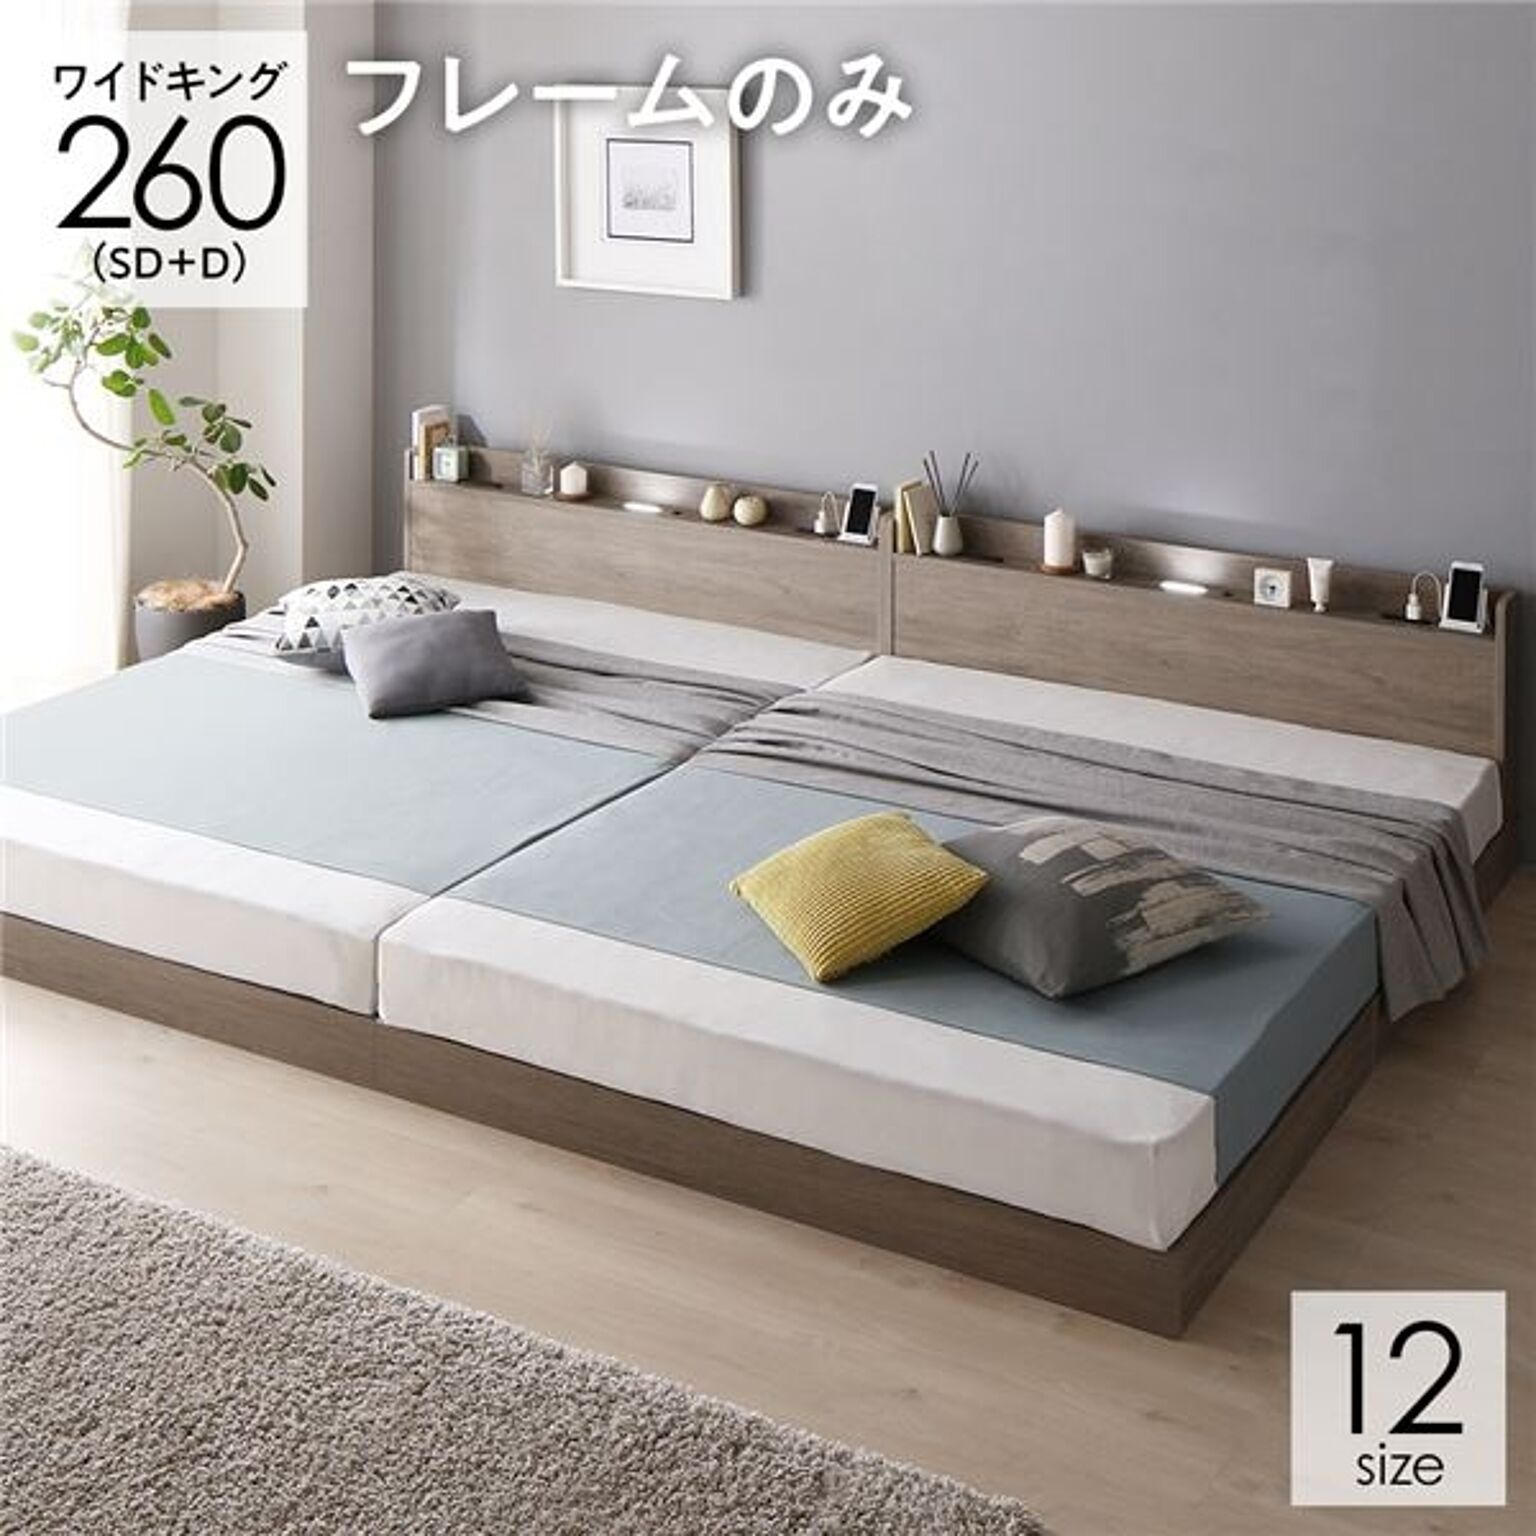 ベッド 連結ベッド ワイドキング260SD+D セミダブル+ダブル ベッドフレームのみ グレージュ 低床 連結 ロータイプ 棚付き 宮付き 2